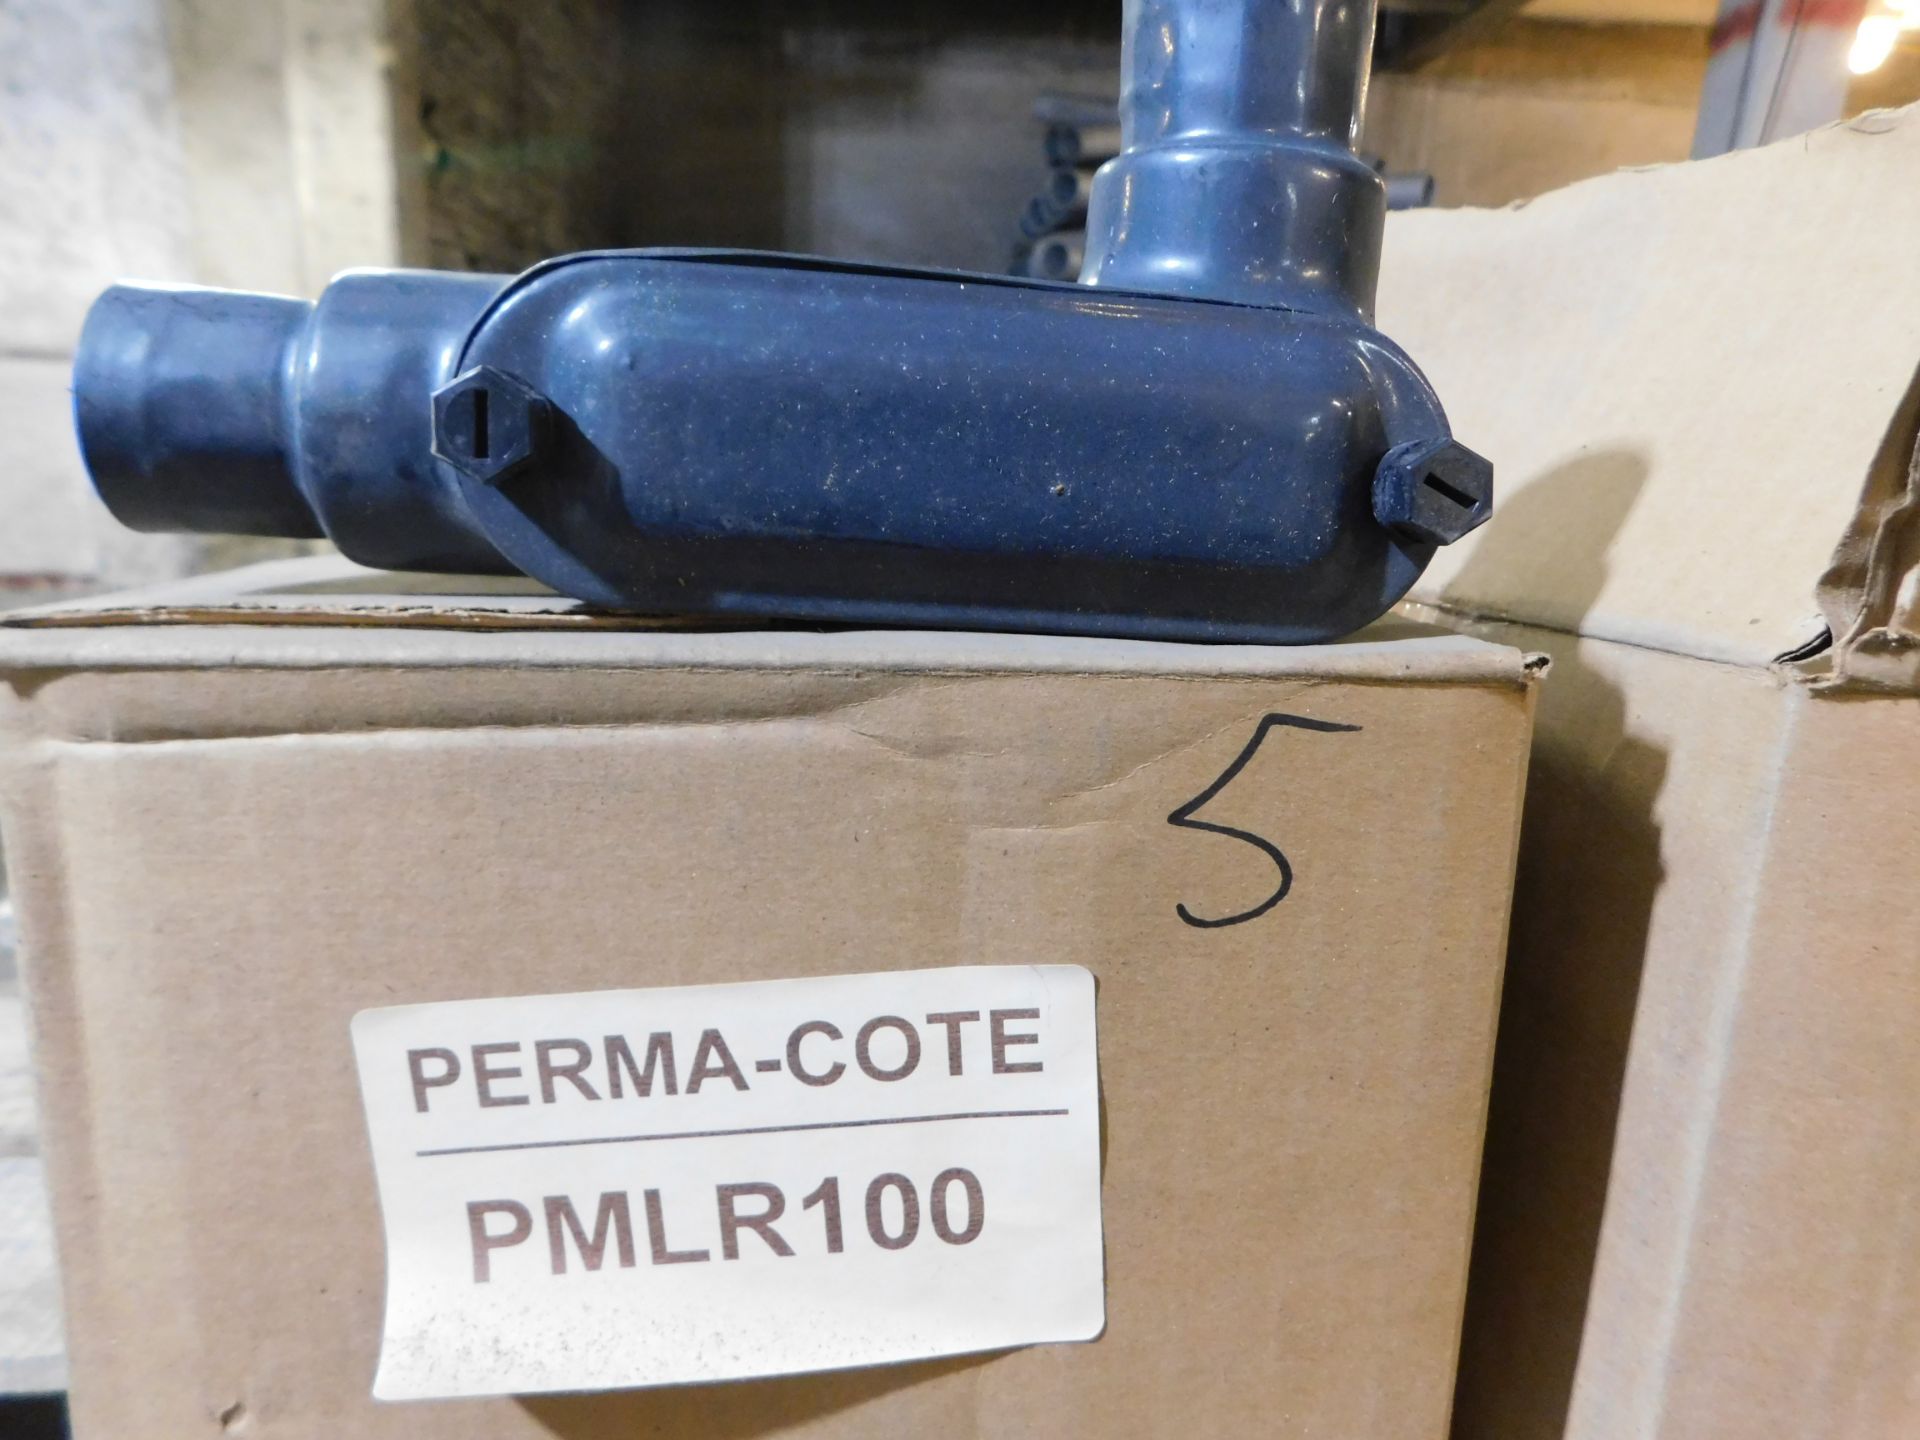 15X Pmlr100 Perma-Cote 1-In Conduit Body